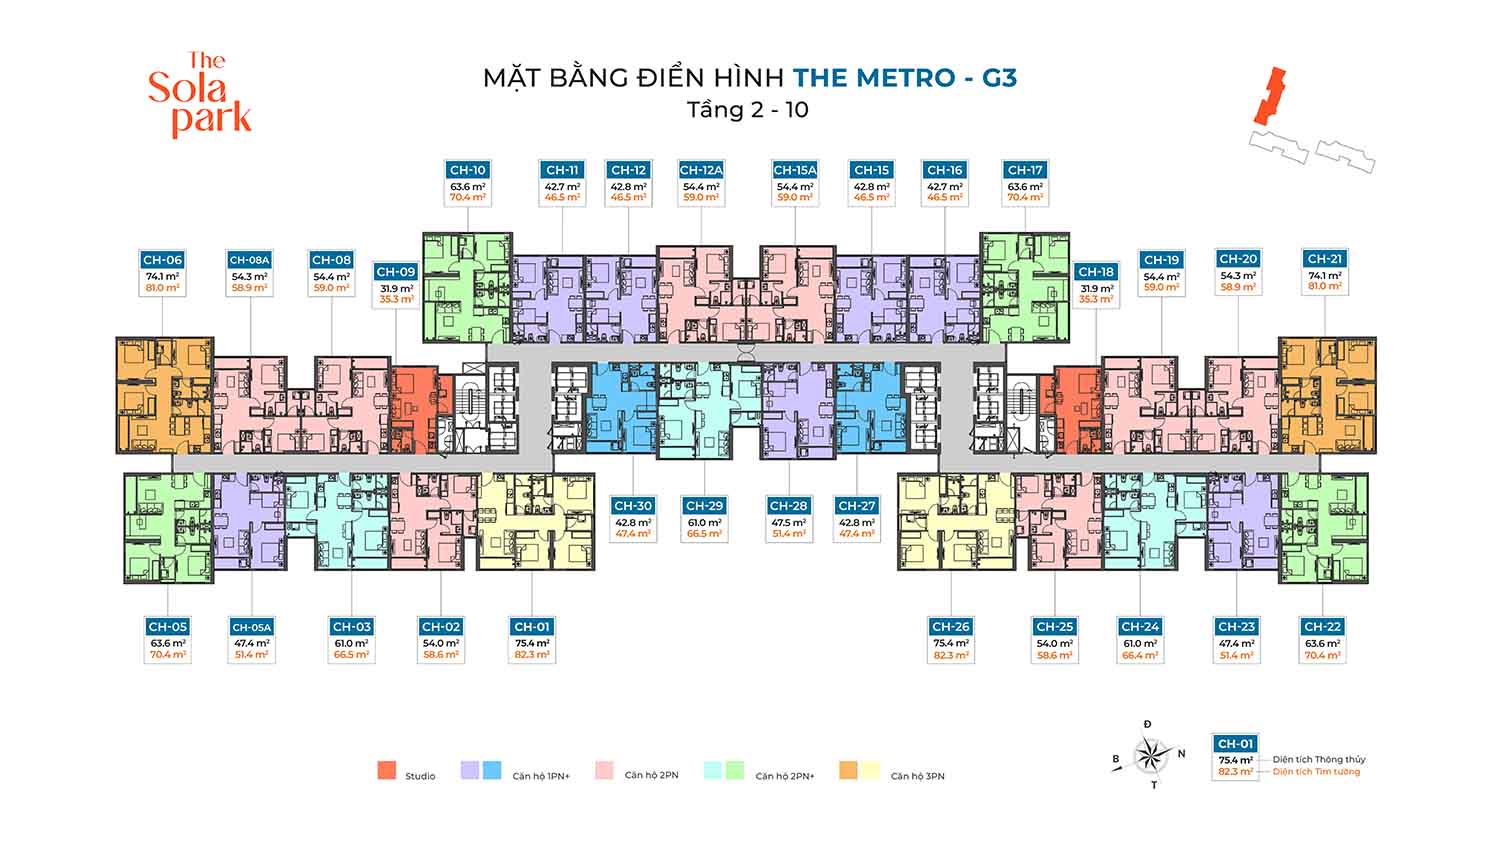 G3-the-Metro-mat-bang-tang-dien-hinh-tang-2-10-Imperia-Smart-City-2-The-Sola-Park-W1500